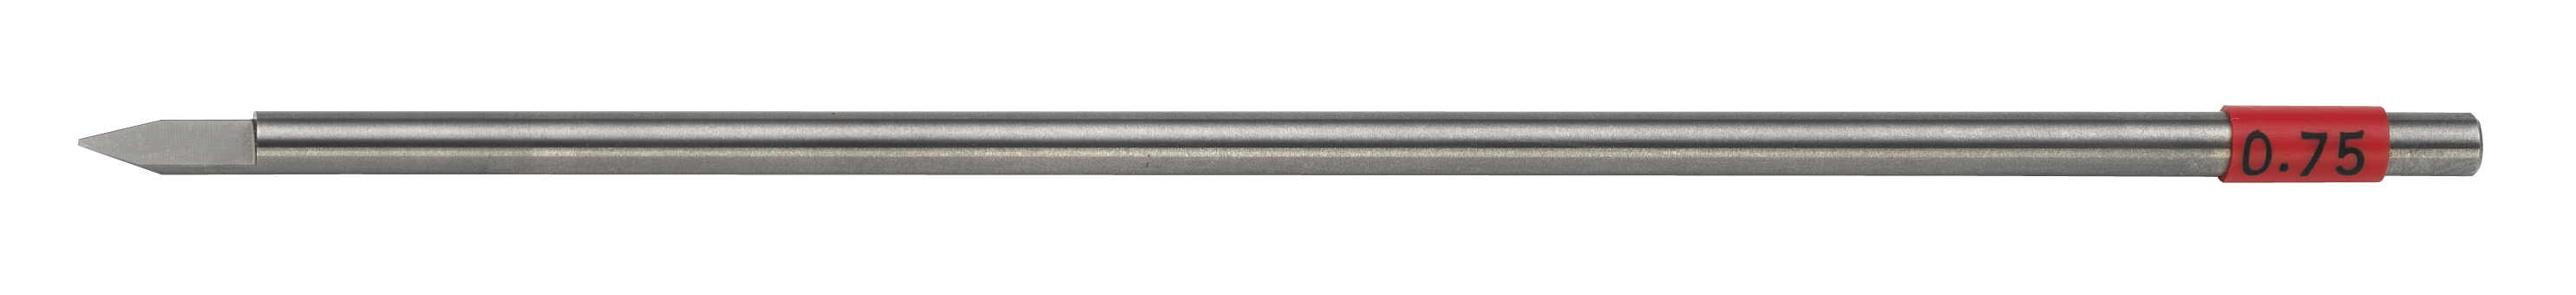 TS cutter, shaft dia. 4.36 mm, width 0.75 mm Gravograph